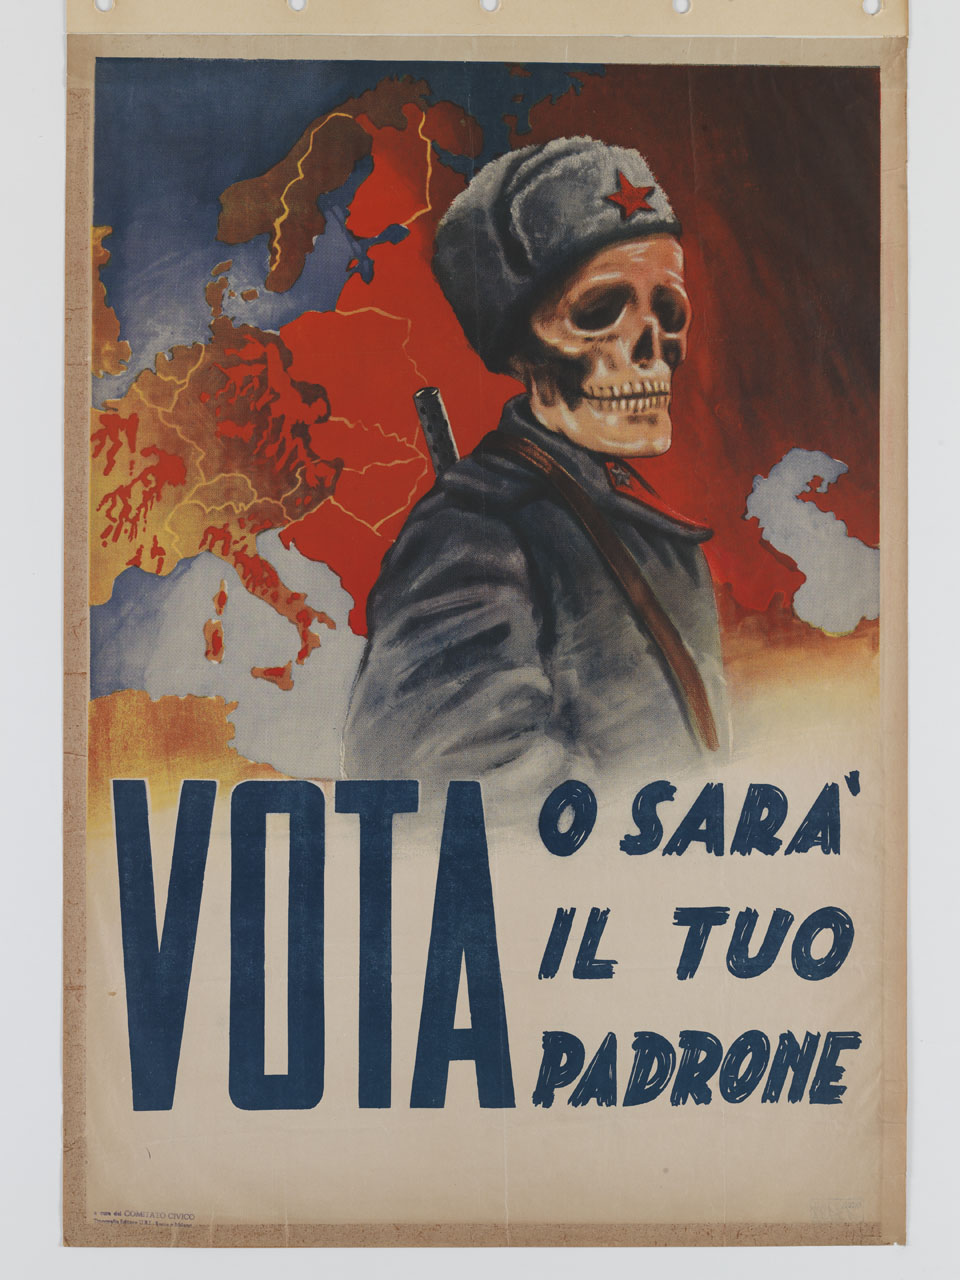 scheletro in uniforme sovietica sullo sfondo di una carta geografica dell'Europa (manifesto) - ambito italiano (sec. XX)